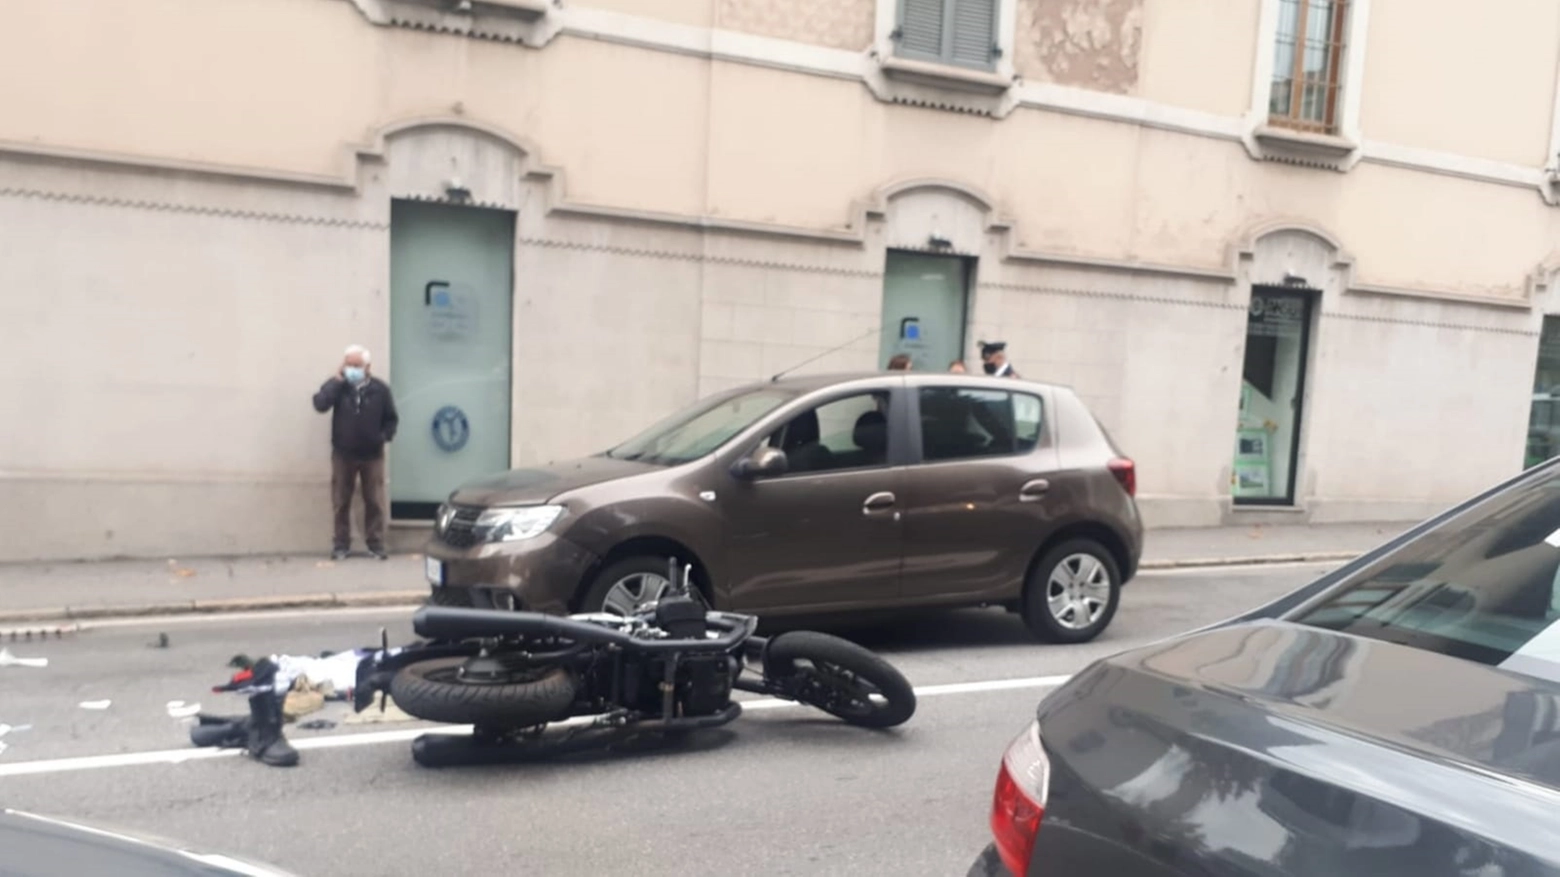 Il motociclista è stato urtato da un'auto ed è finito contro una seconda utilitaria